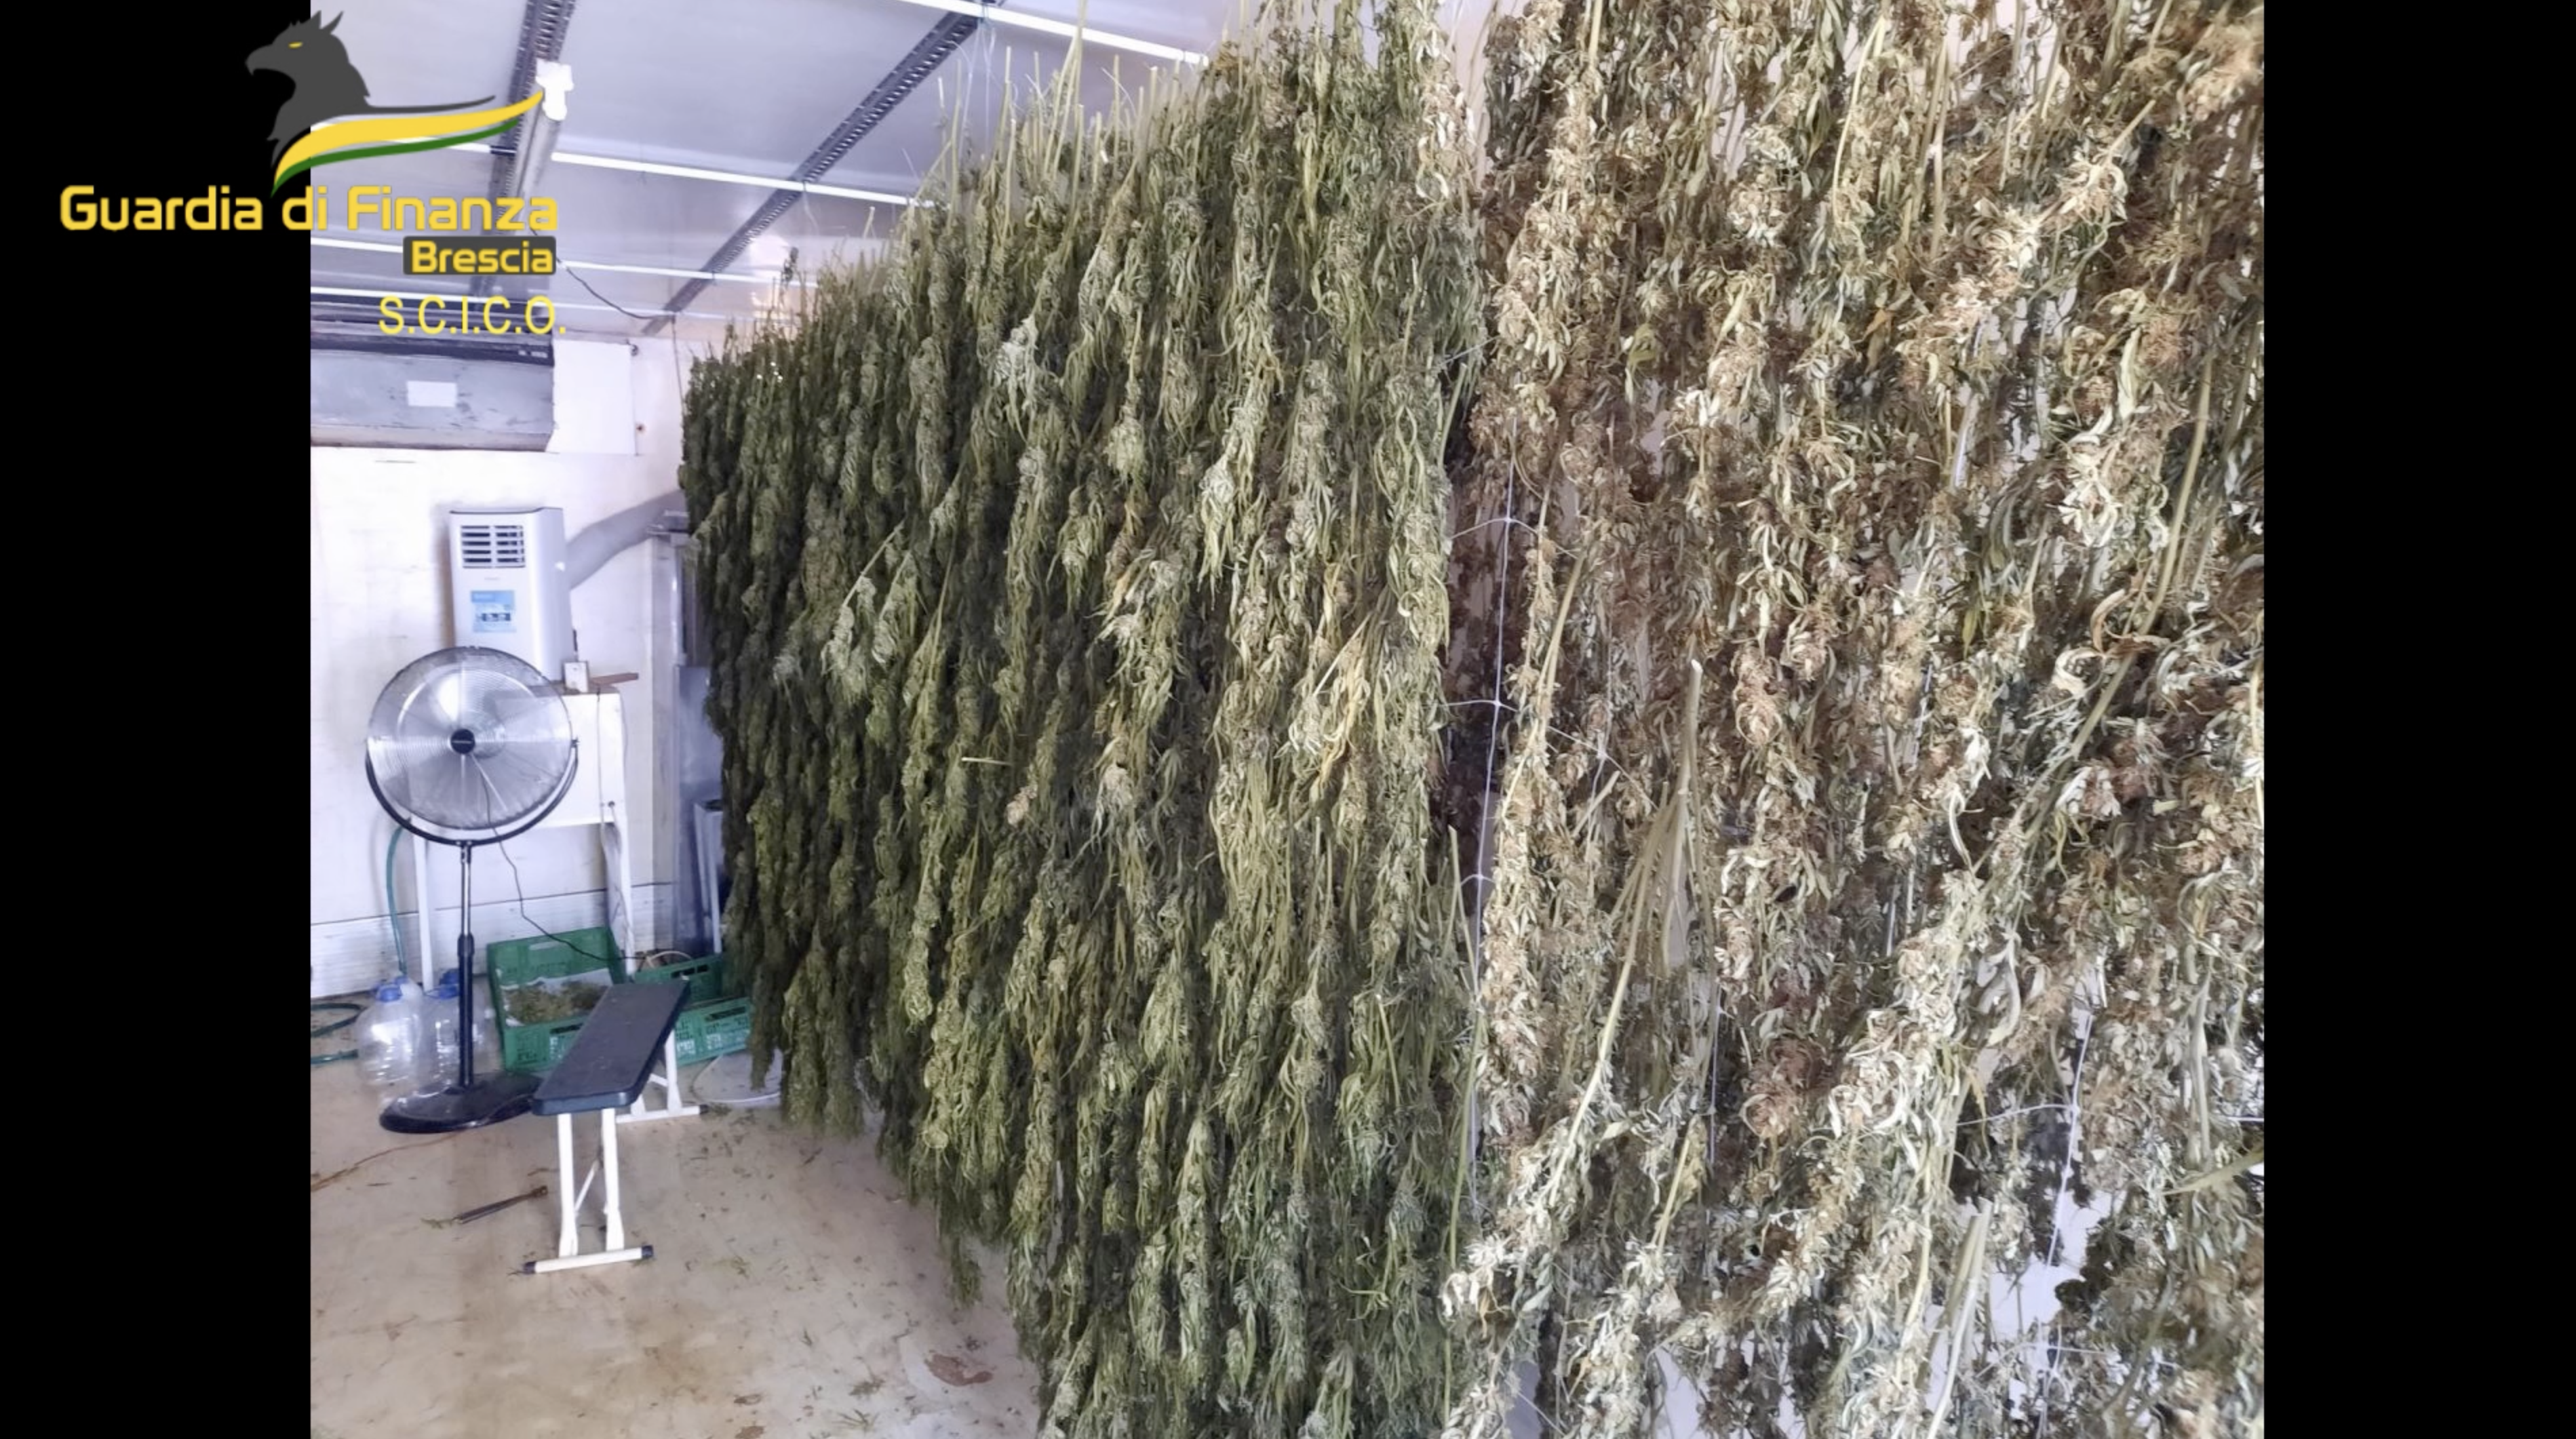  ‣ adn24 brescia | sequestrate oltre 2,3 tonnellate di marijuana: 8 arresti per coltivazione e spaccio